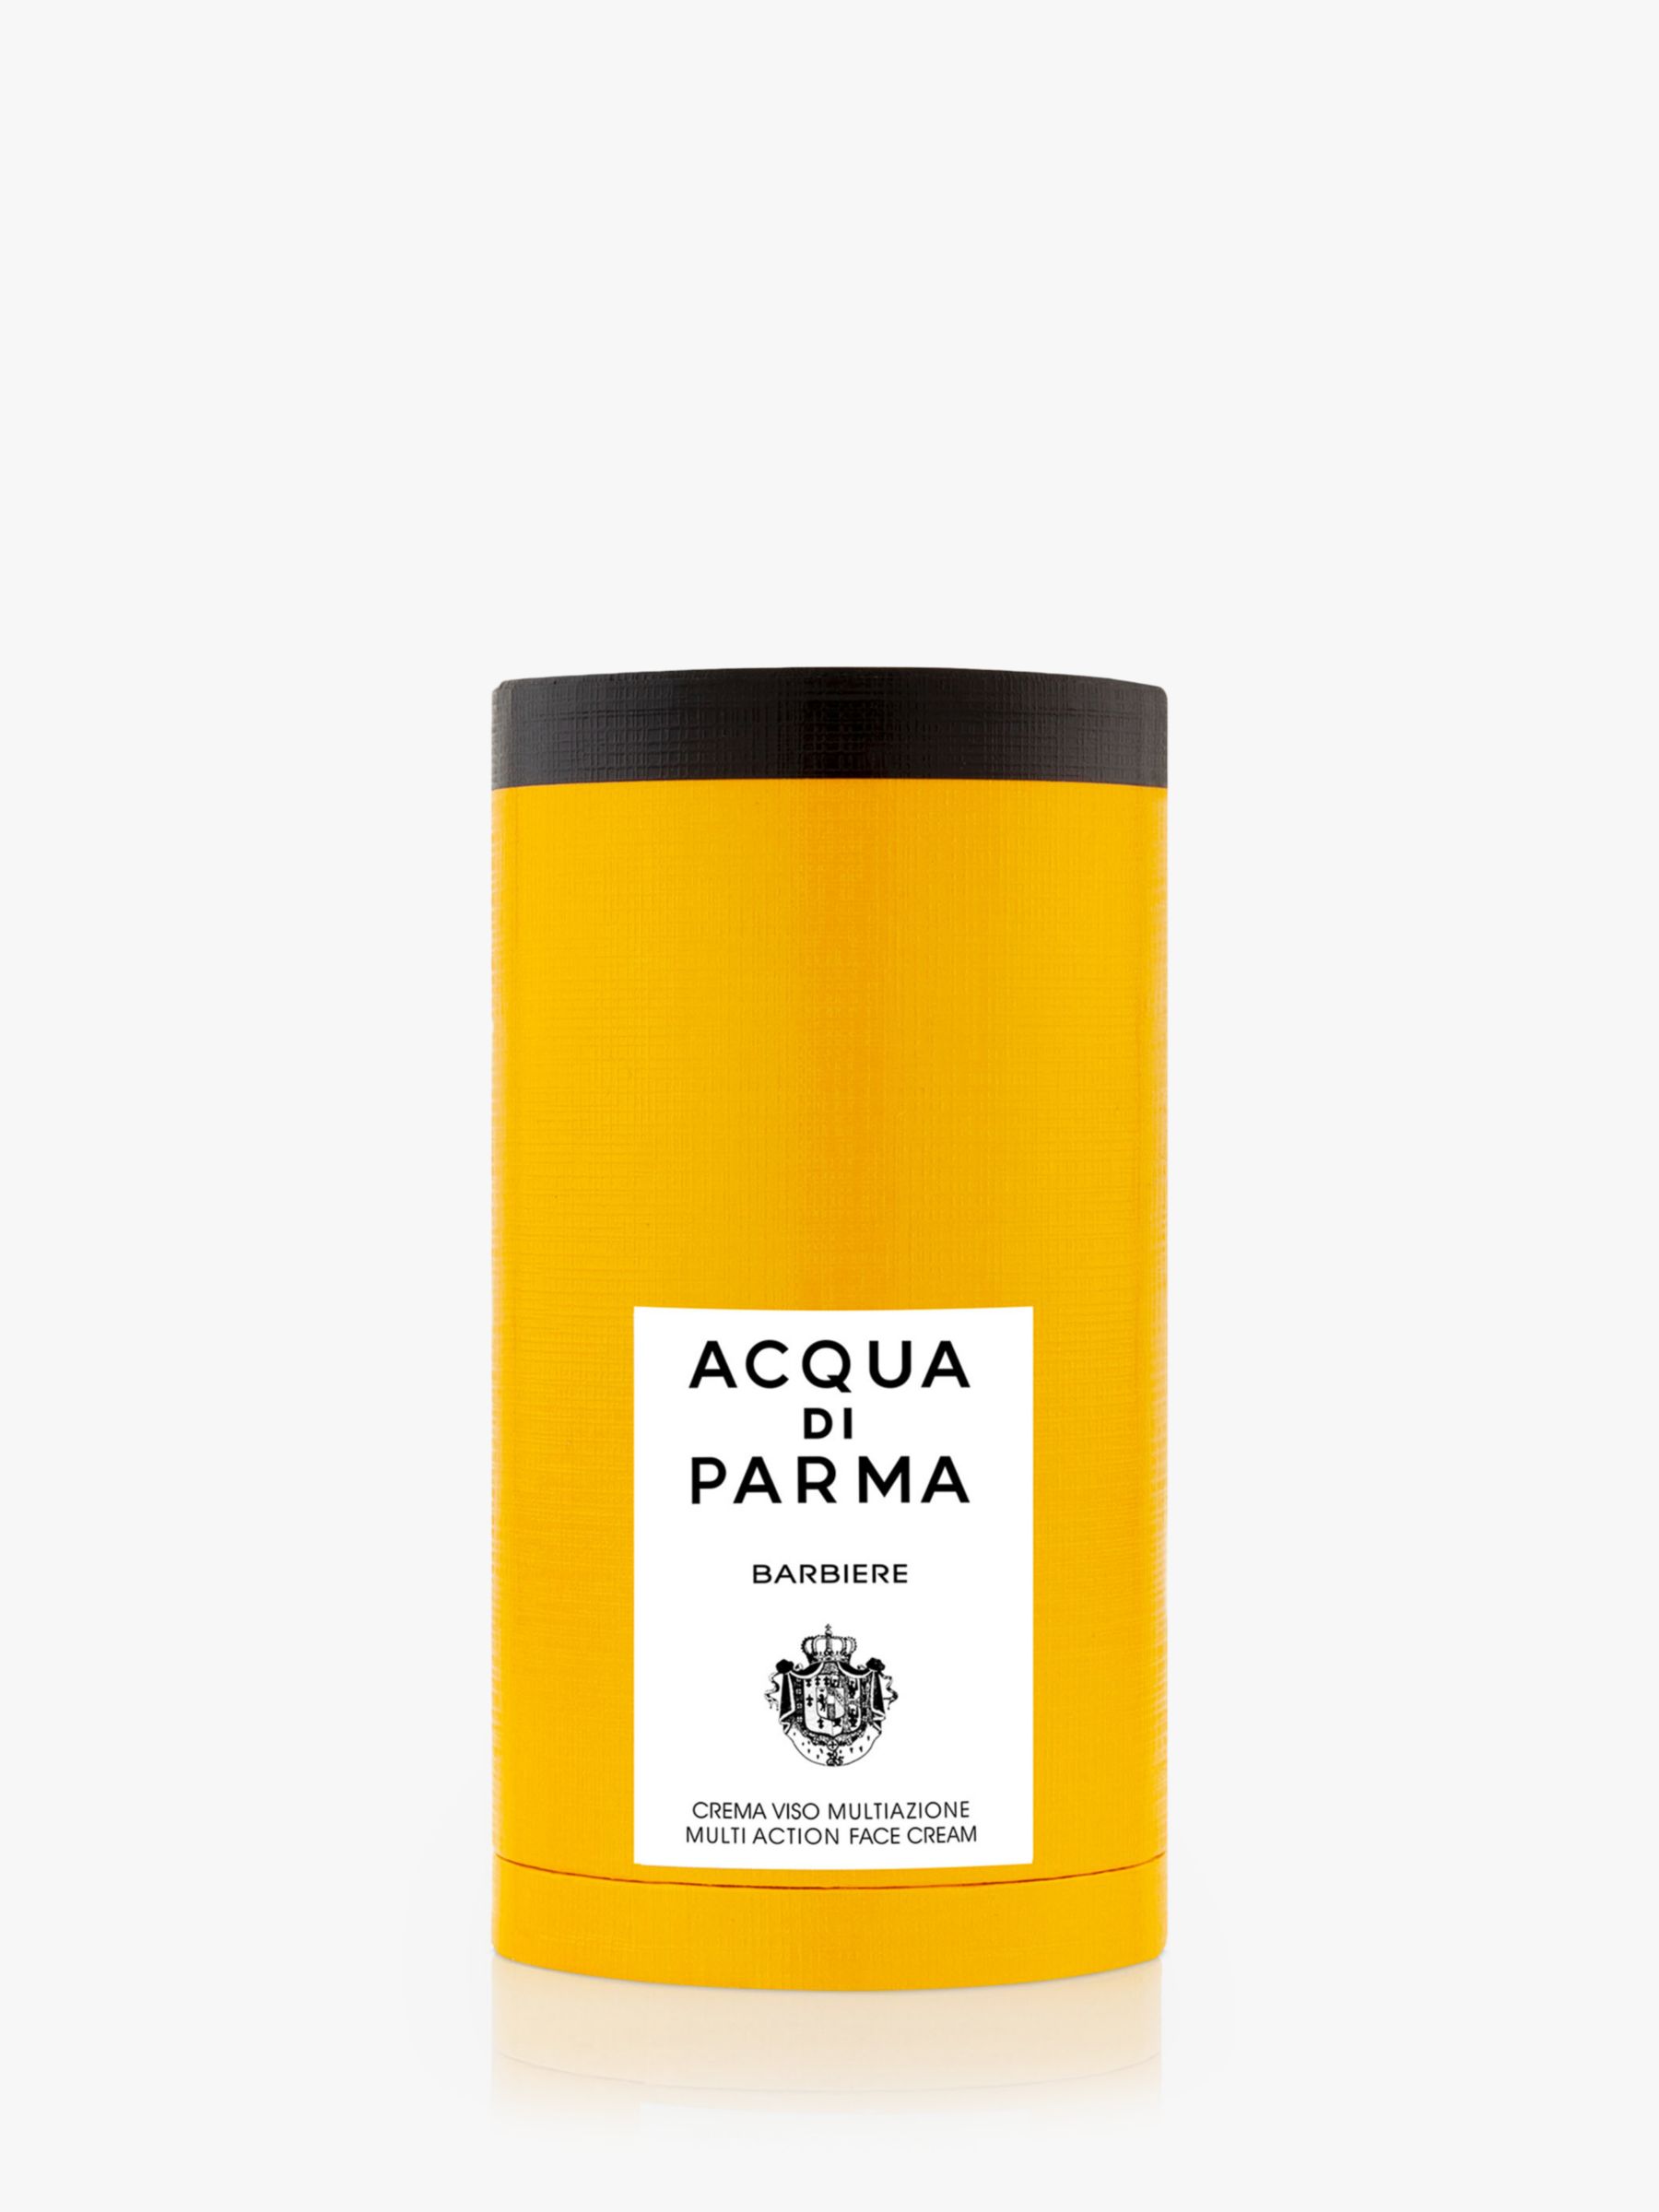 Acqua di Parma Barbiere Multi Action Face Cream, 50ml